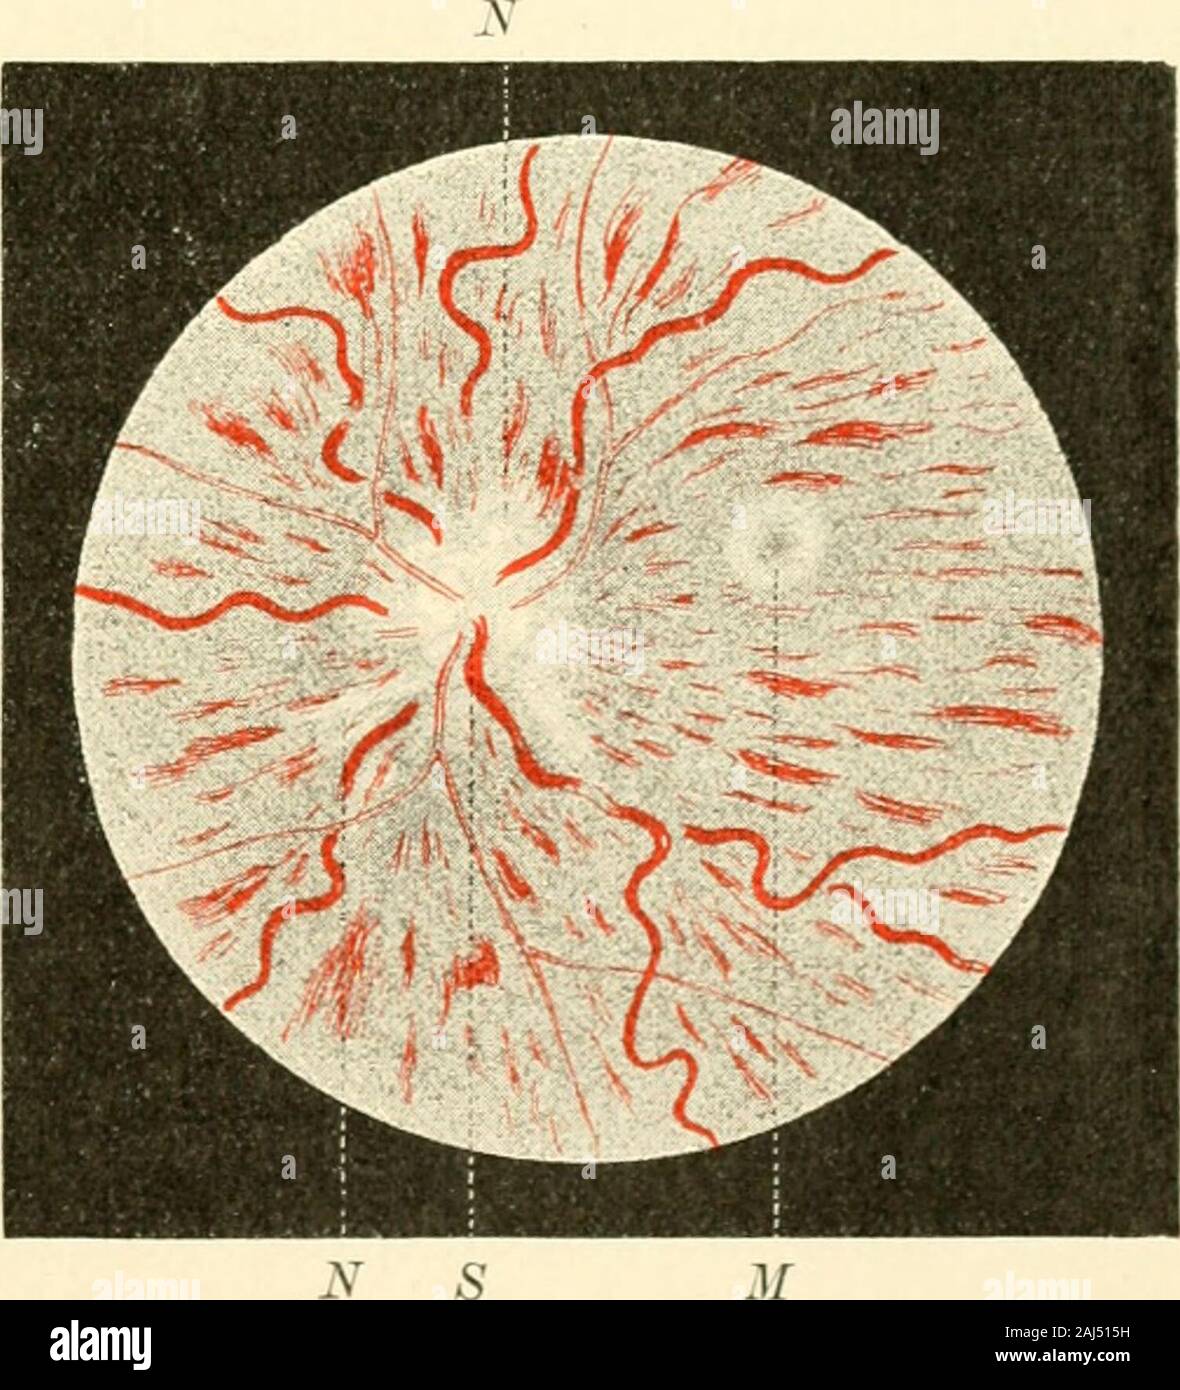 Die Neurologie des Auges Ein Handbuch für Nerven- und Augenärzte . inae er-scheinen nach Mich el (552). welcher dieses Krankheitsbild zuerst fixiert hat,die Venen hochgradig geschlängelt(vergl. Fig. 94), von wurstähn-lichem Aussehen, die Blutsäule inderselben ist ungemein verbreitertund von fast schwarzroter Fär-bung. Schmälere und breitereStellen wechseln miteinander ab.Im Gegensatze hierzu steht dasVerhalten der Arterien, welcheverengt und auffallend geradliniggestreckt erscheinen. Die Ein-trittsstelle des Sehnerven ist wievon einer Blutlache überzogen,welche die Gefässe vollständig ver-deck Stock Photo